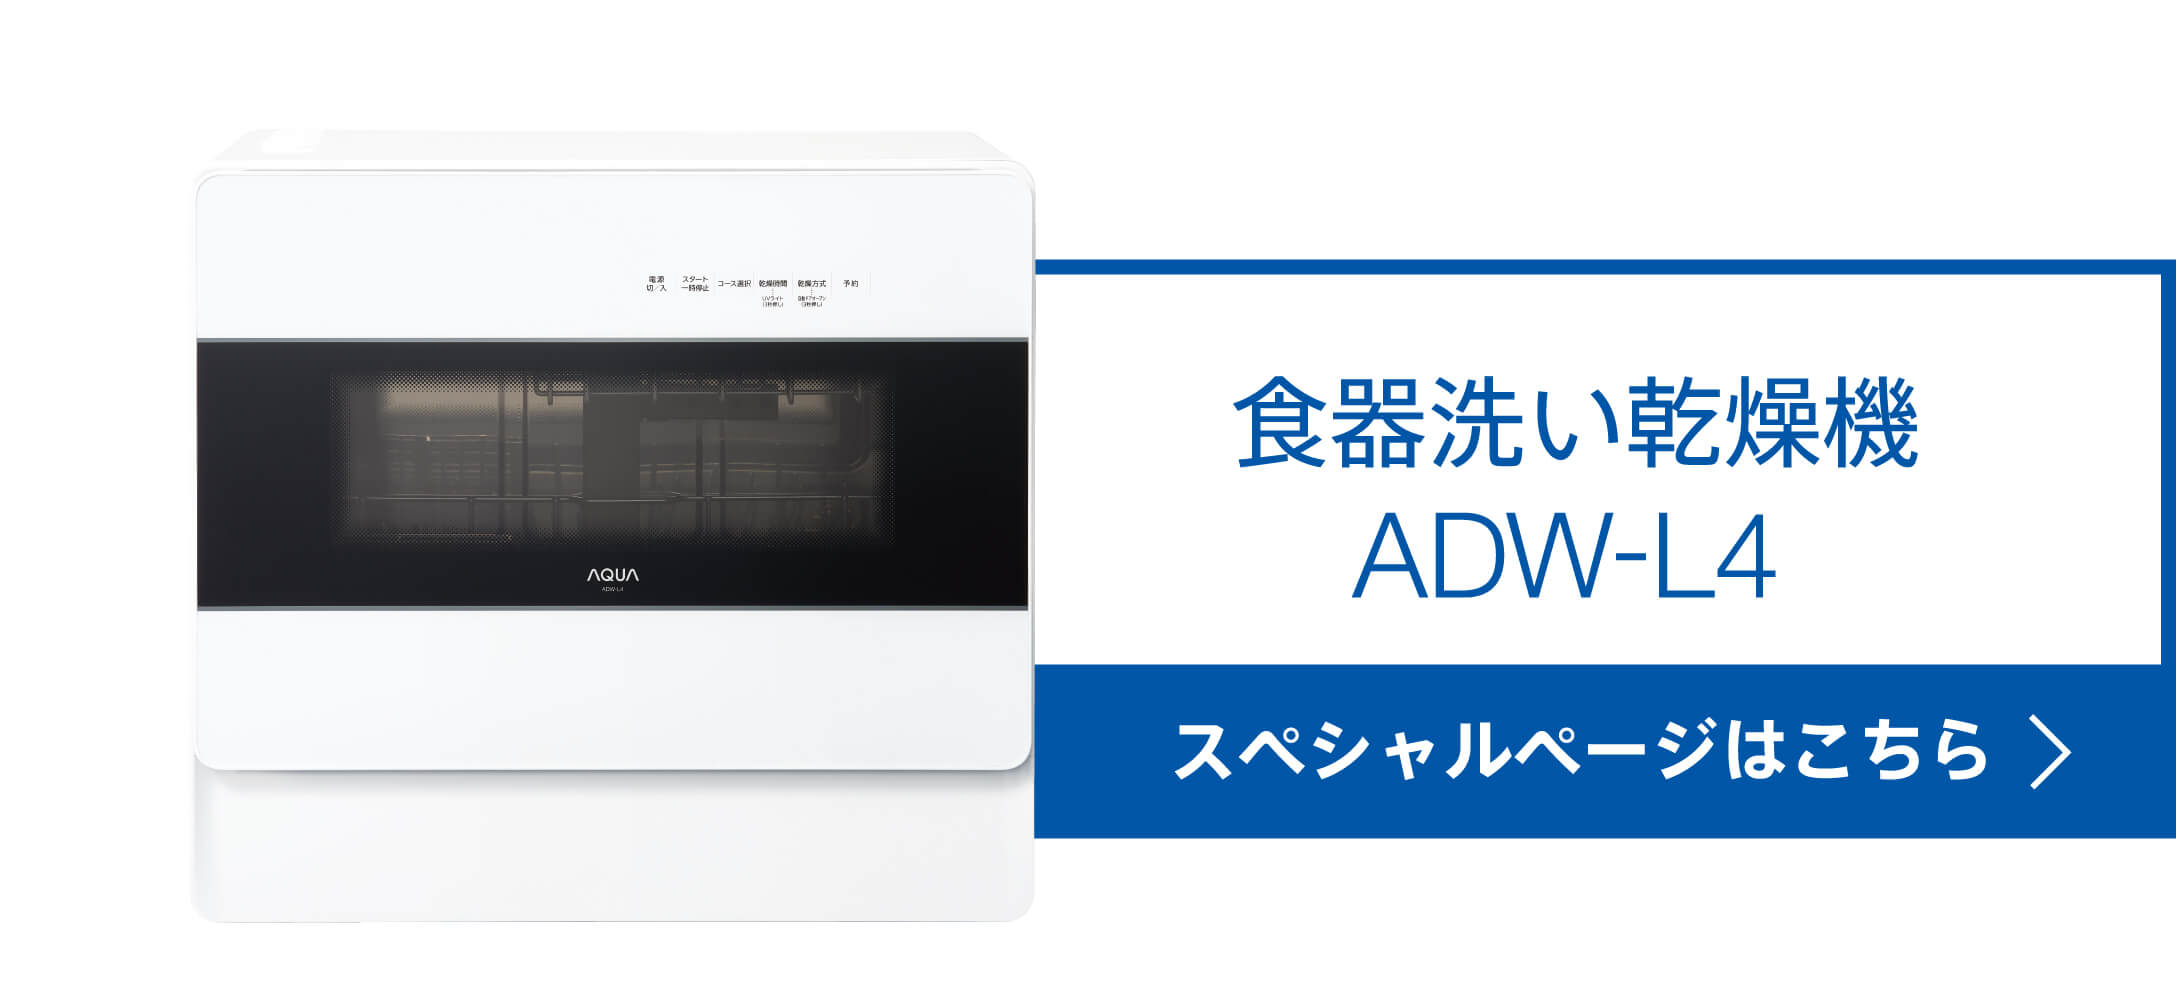 食器洗い機（送風乾燥機能付き）ADW-L4 スペシャルページ